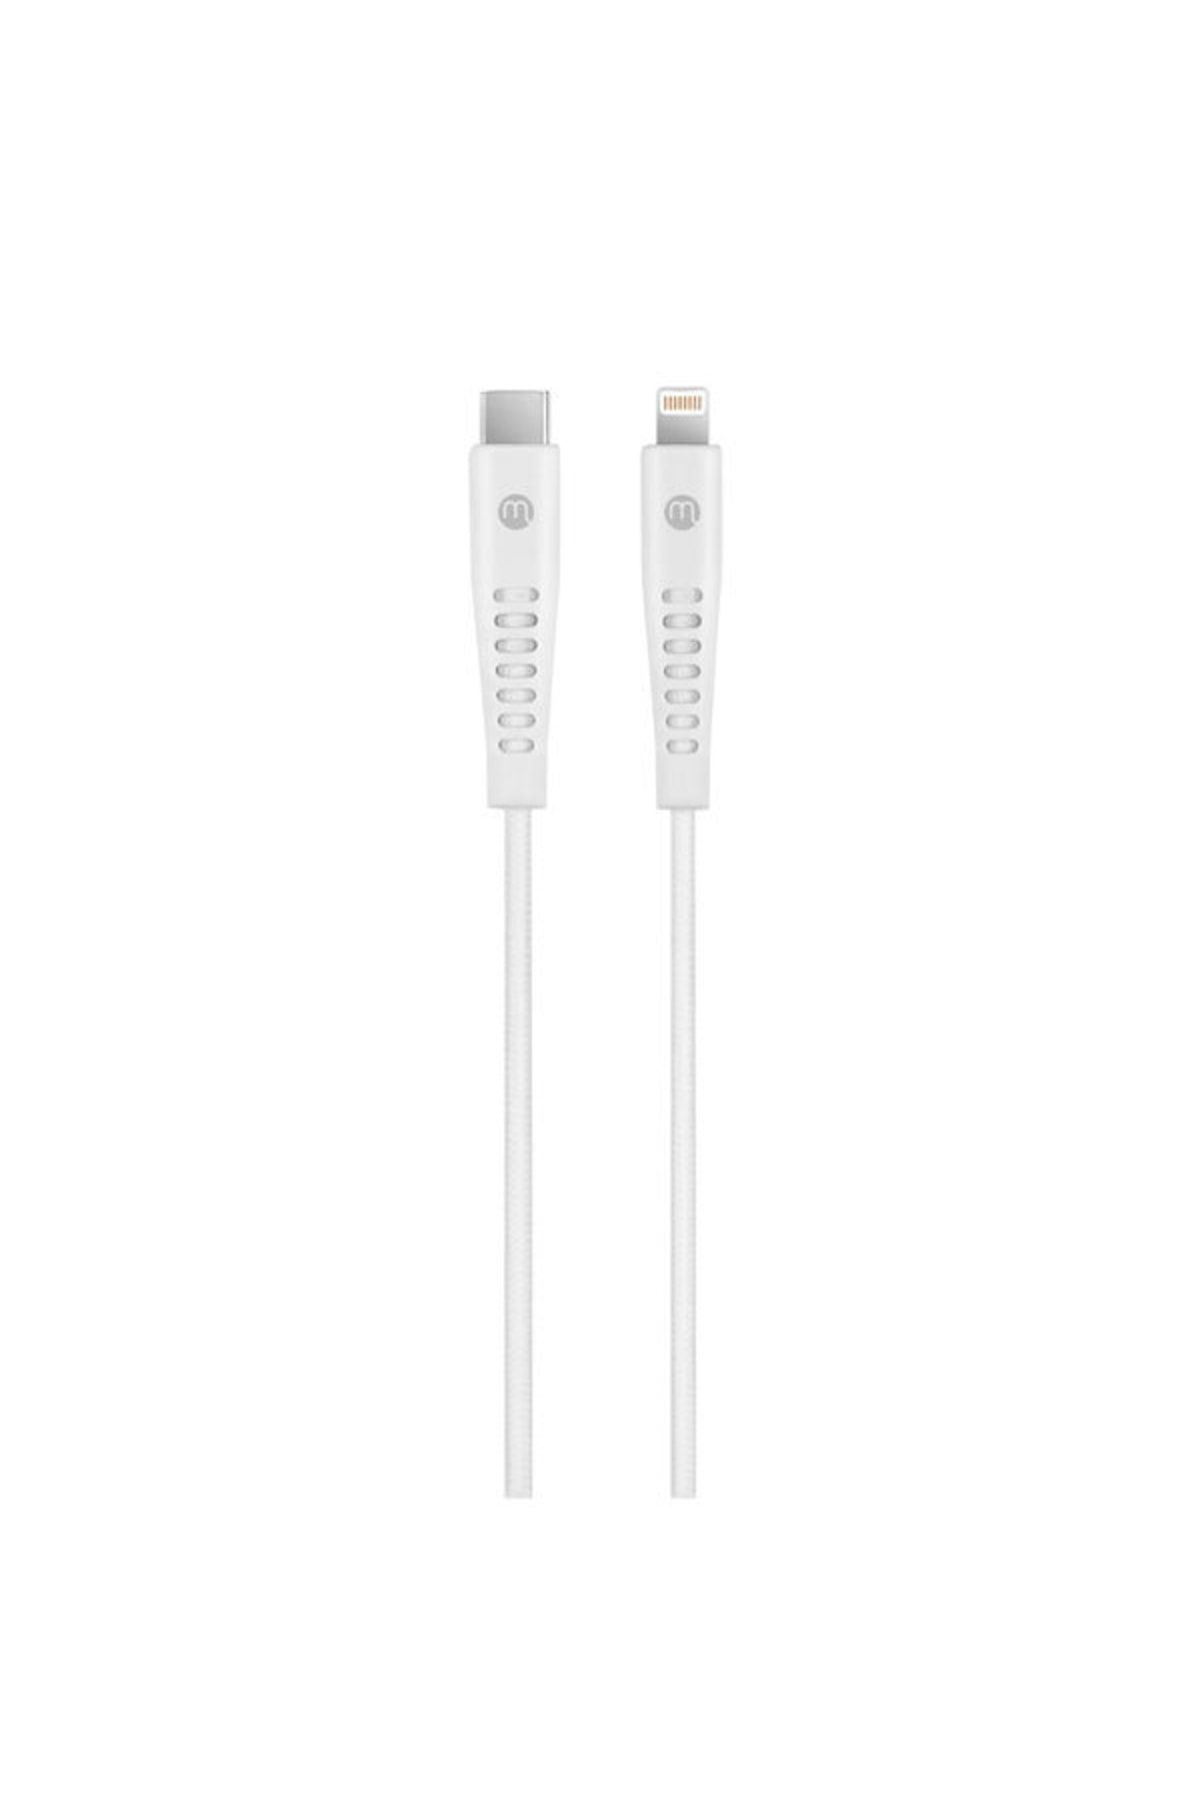 Mojue by ttec 3A/27W Hızlı Şarj Destekli Ekstra Dayanıklı USB-C- iPhone Lightning Şarj Kablosu 120cm